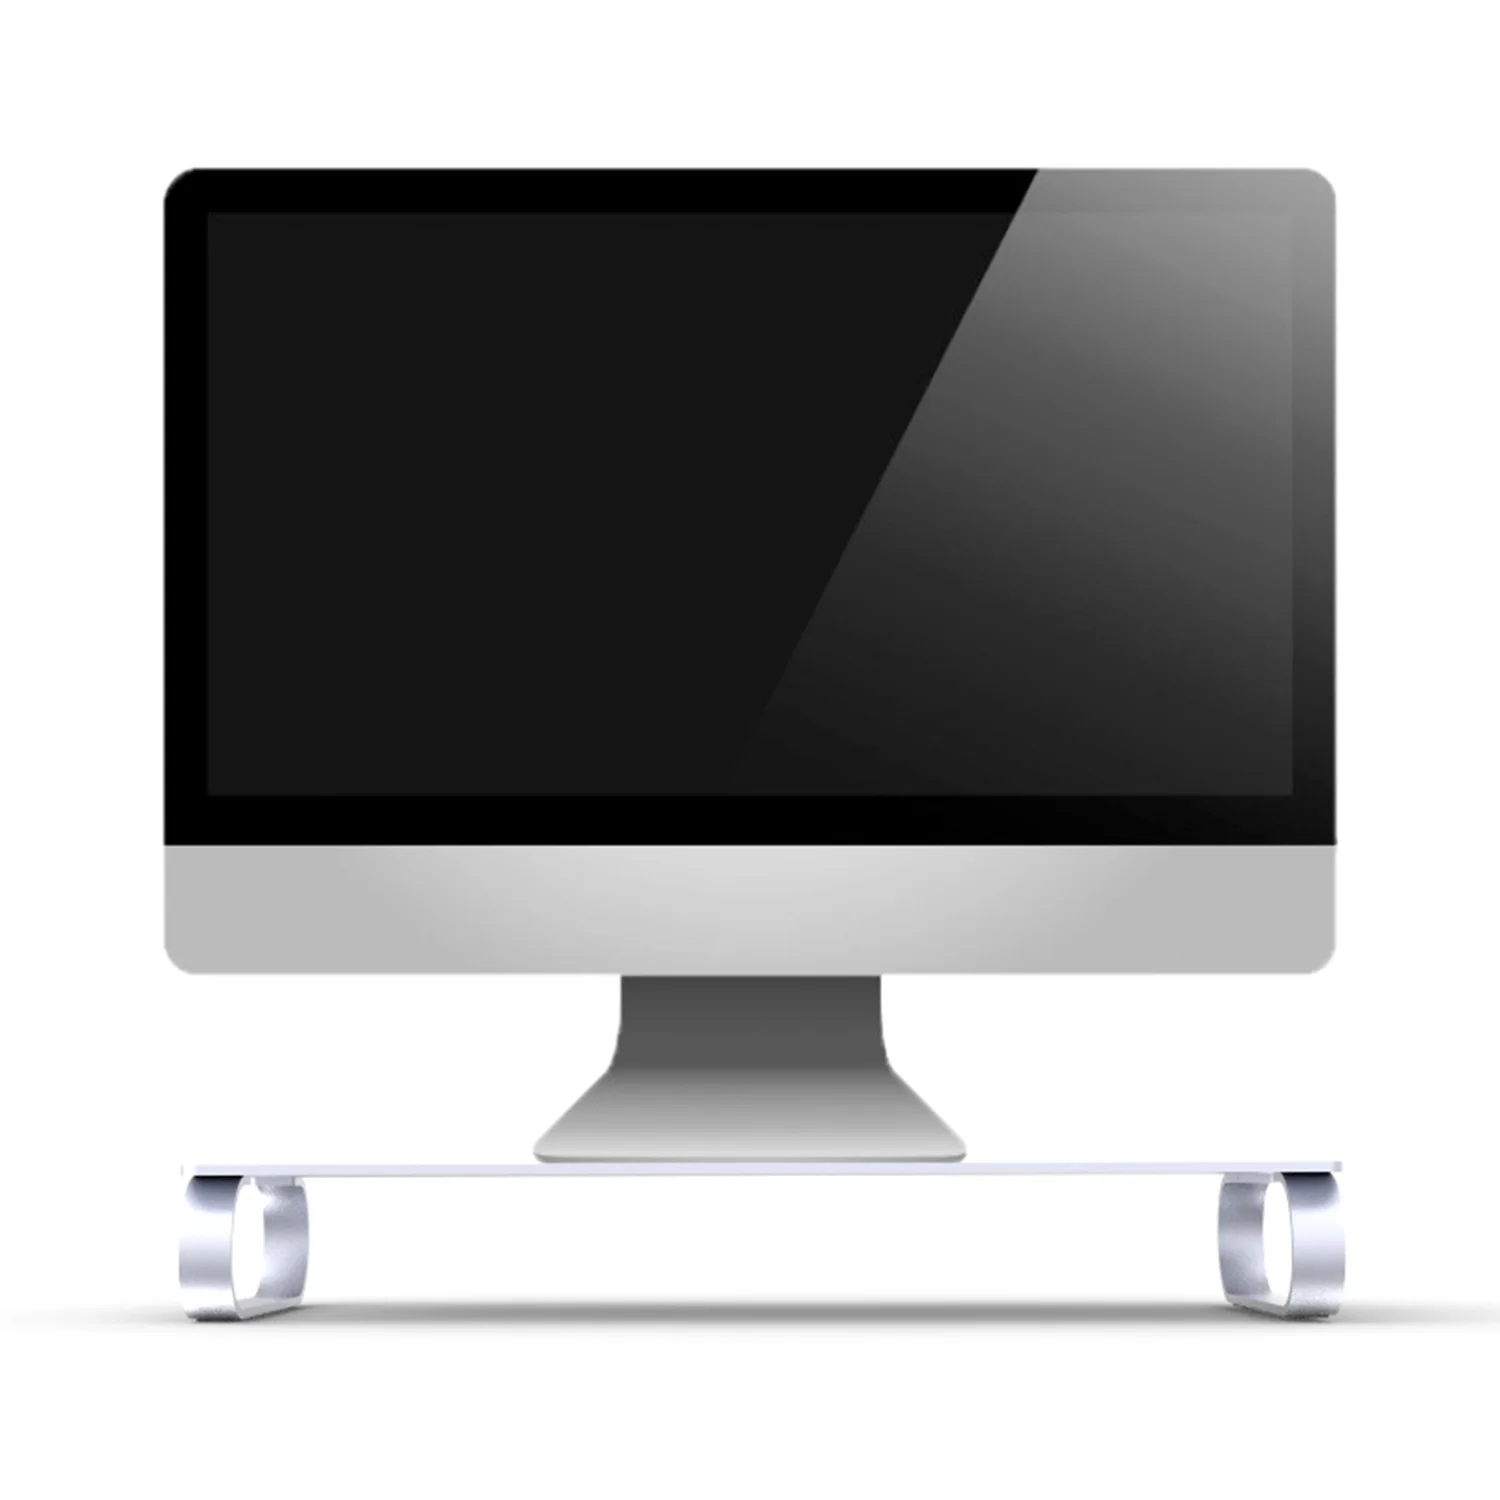 Besegad алюминиевый сплав компьютерный ноутбук Монитор подставка Док-станция стояк стол органайзер универсальный для Apple iMac MacBook проектор